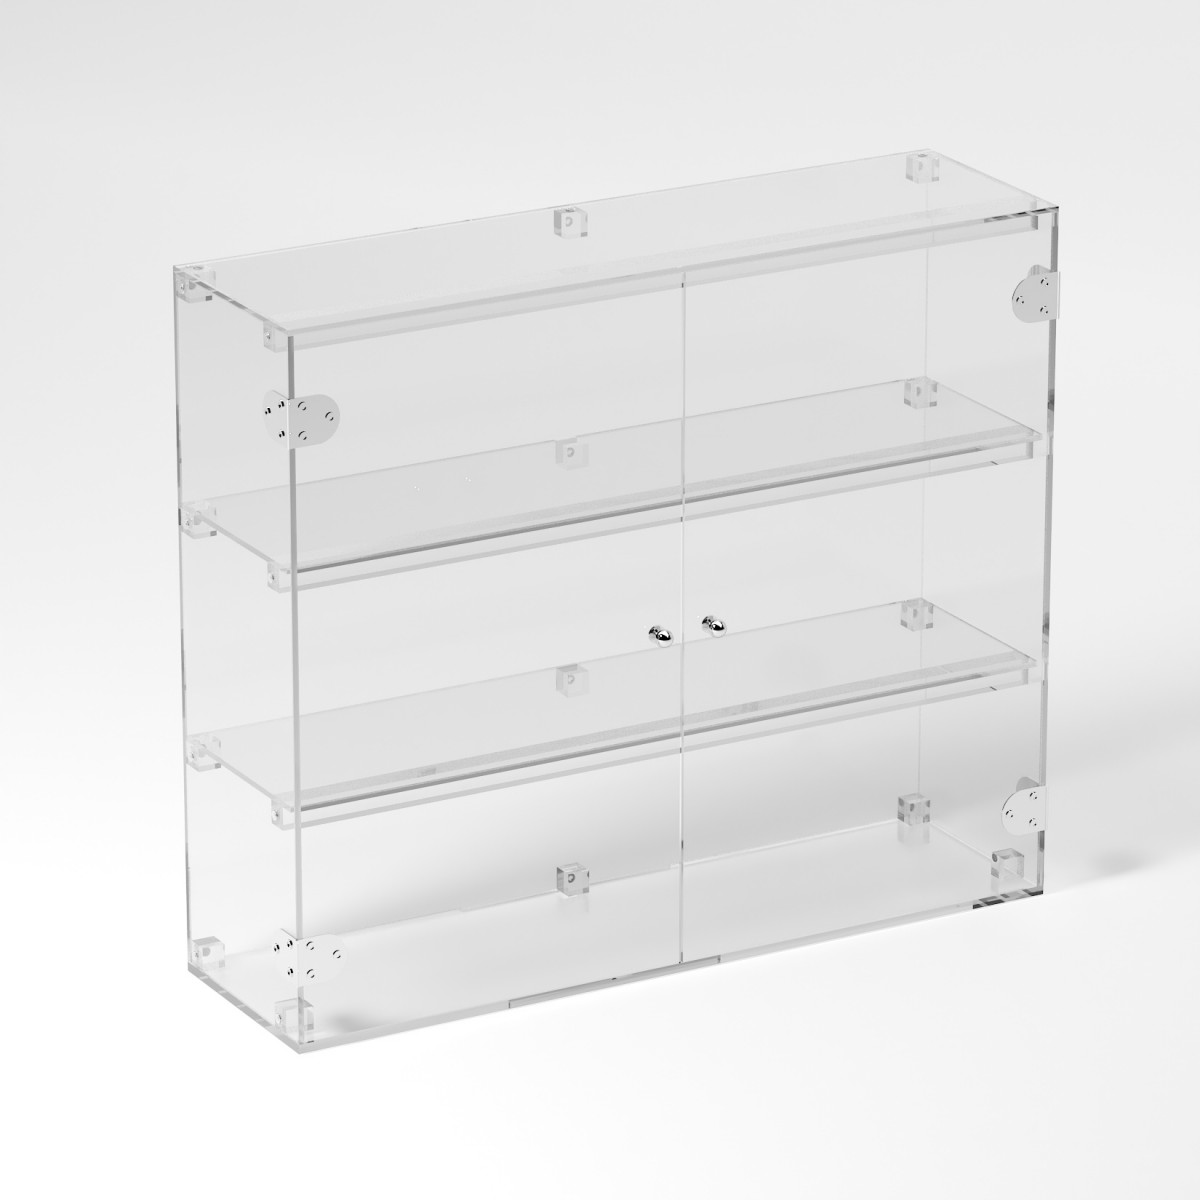 E-814 VET - Ampia vetrina espositiva in plexiglass trasparente a 3 ripiani - Misure: 70 x 20 x h60 cm